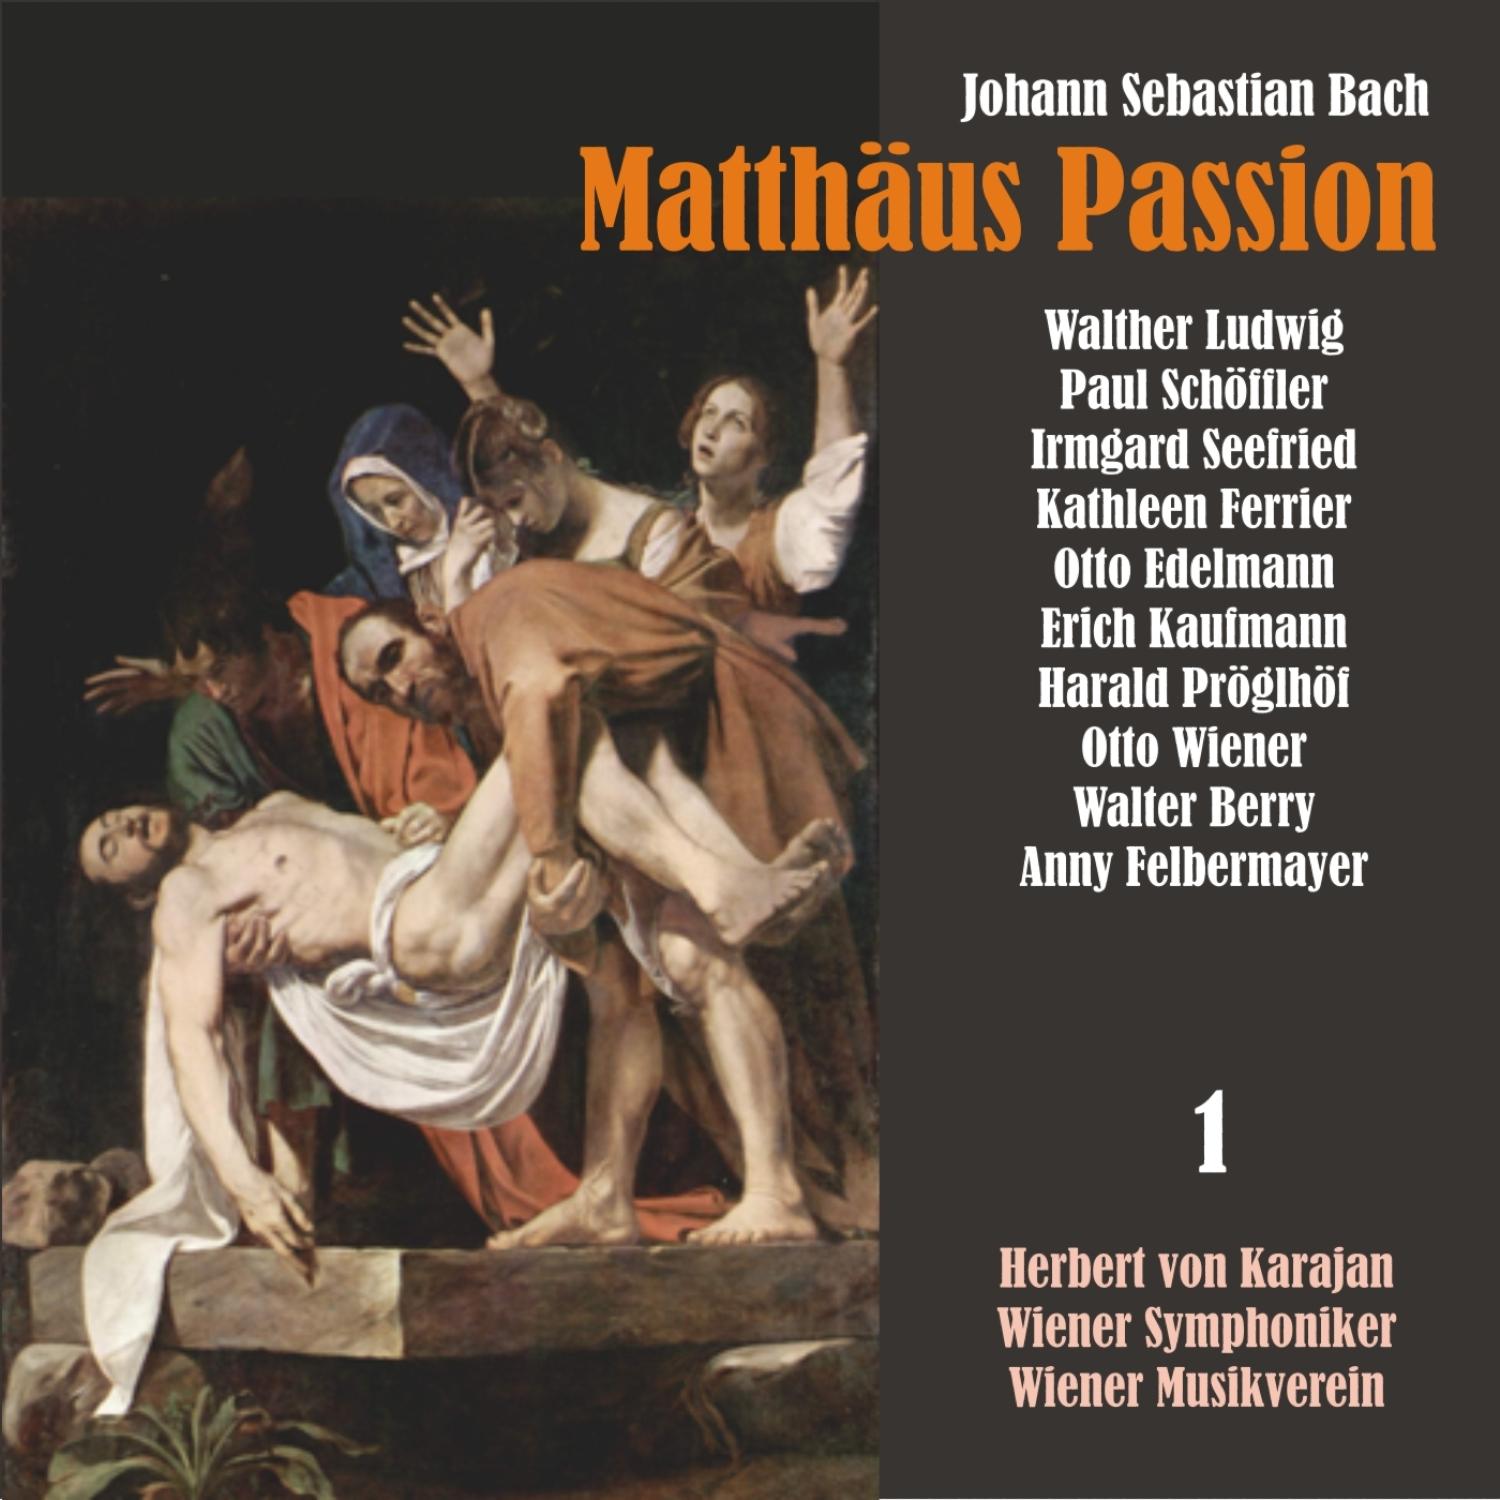 Matthäus Passion, BWV 244: "Ich will bei meinem Jesu wachen"